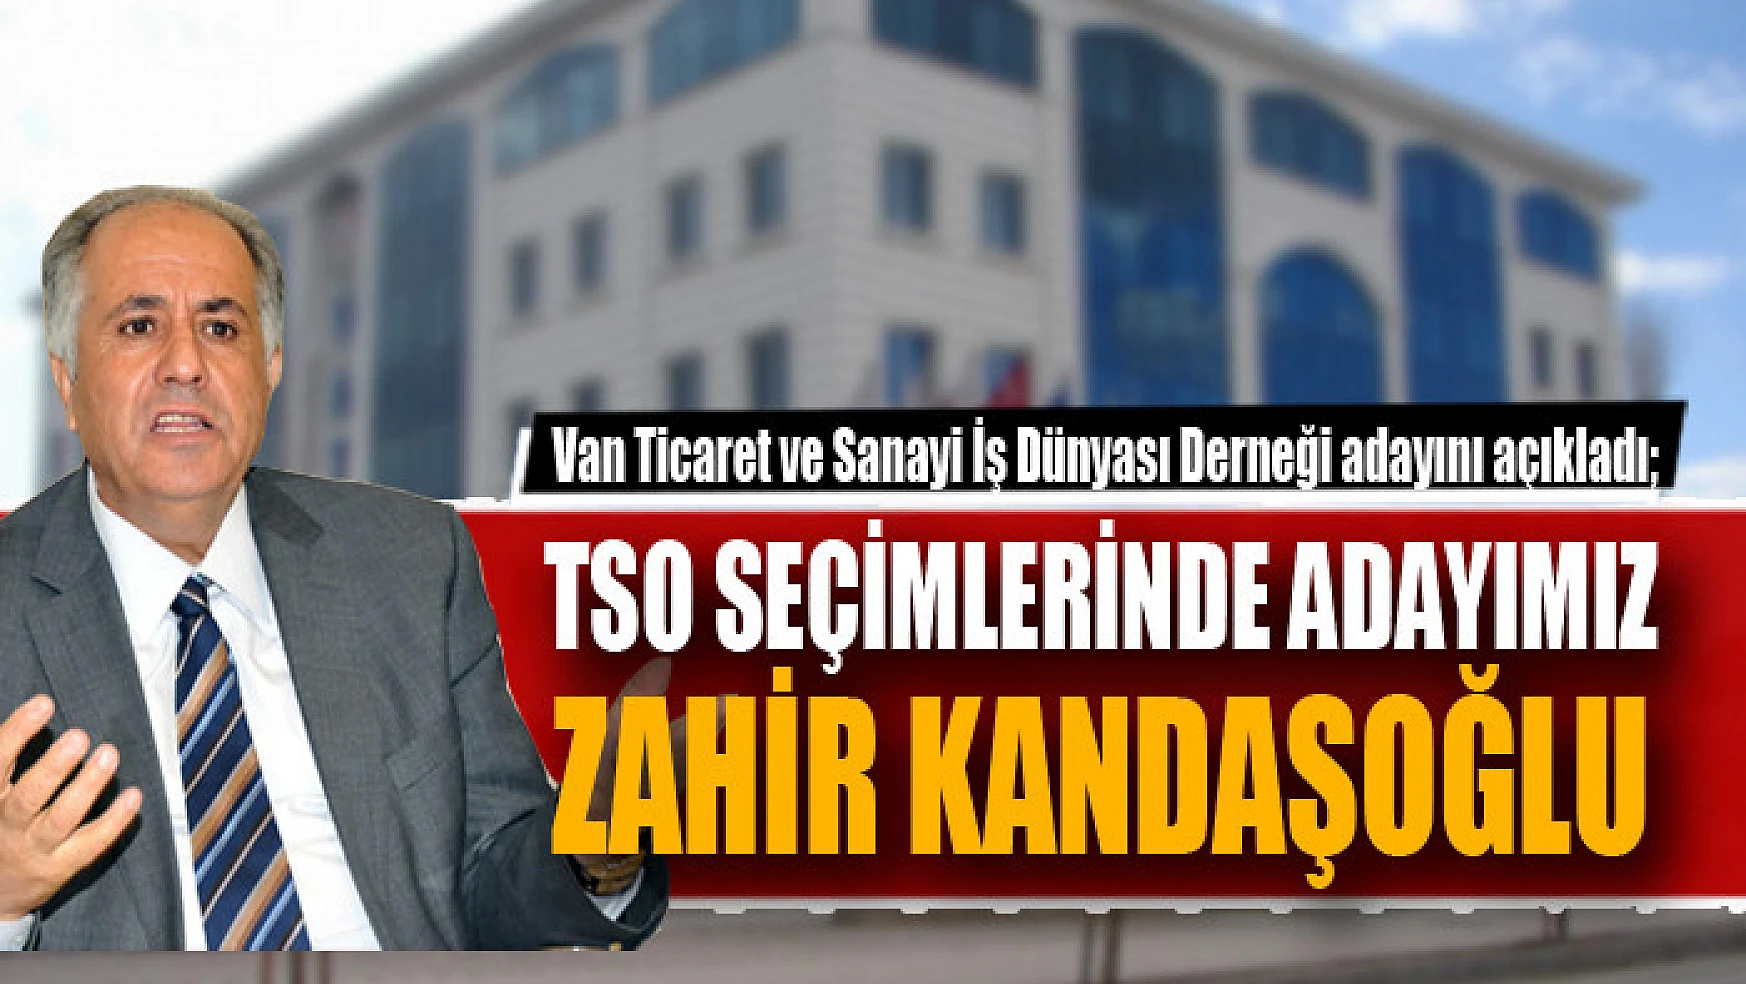 Van Ticaret ve Sanayi İş Dünyası Derneği adayını açıkladı TSO seçimlerinde adayımız Zahir Kandaşoğlu